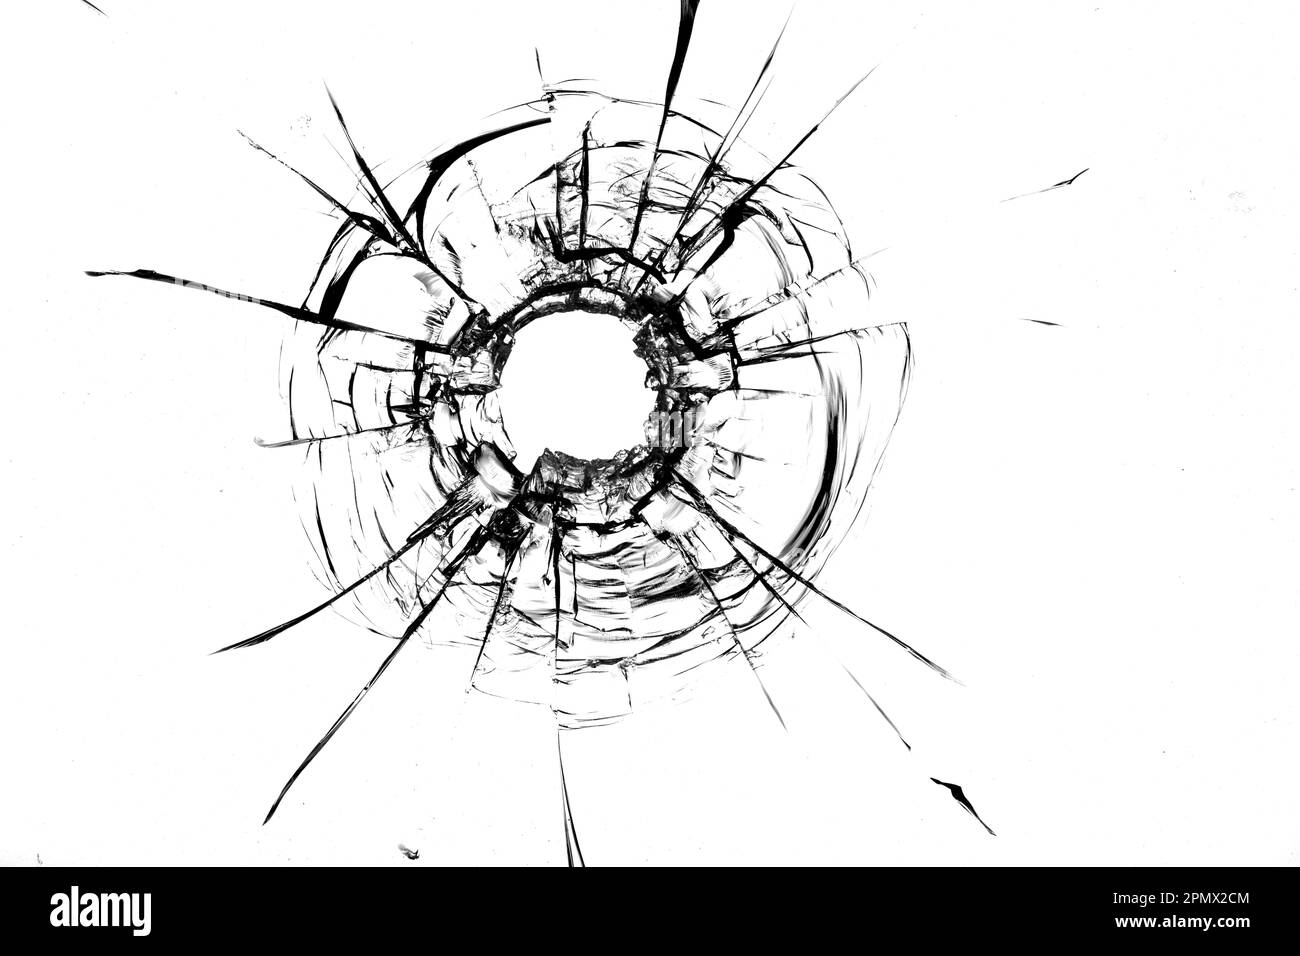 photo de verre présentant des fissures causées par un impact de balle sur un fond blanc. Idéal pour illustrer une scène de crime ou un incident de tir Banque D'Images